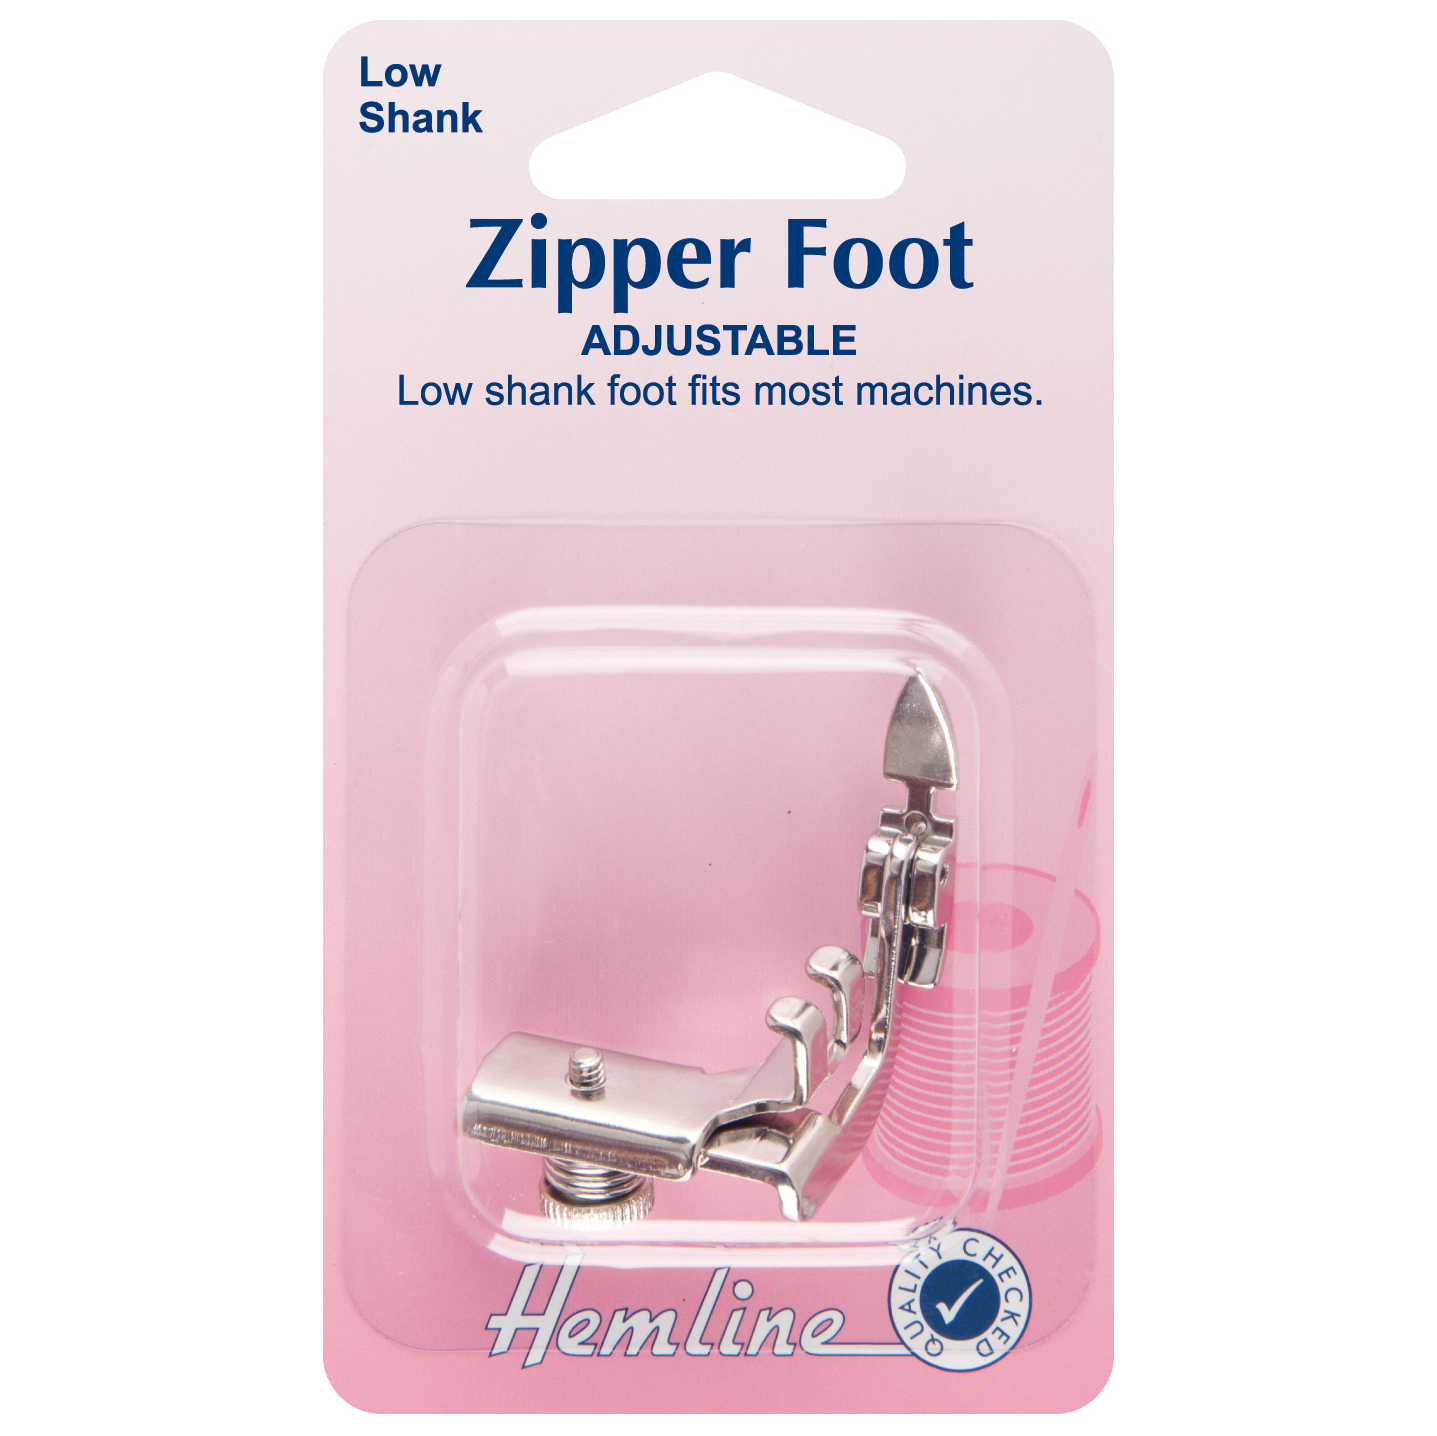 Zipper Foot - Adjustable